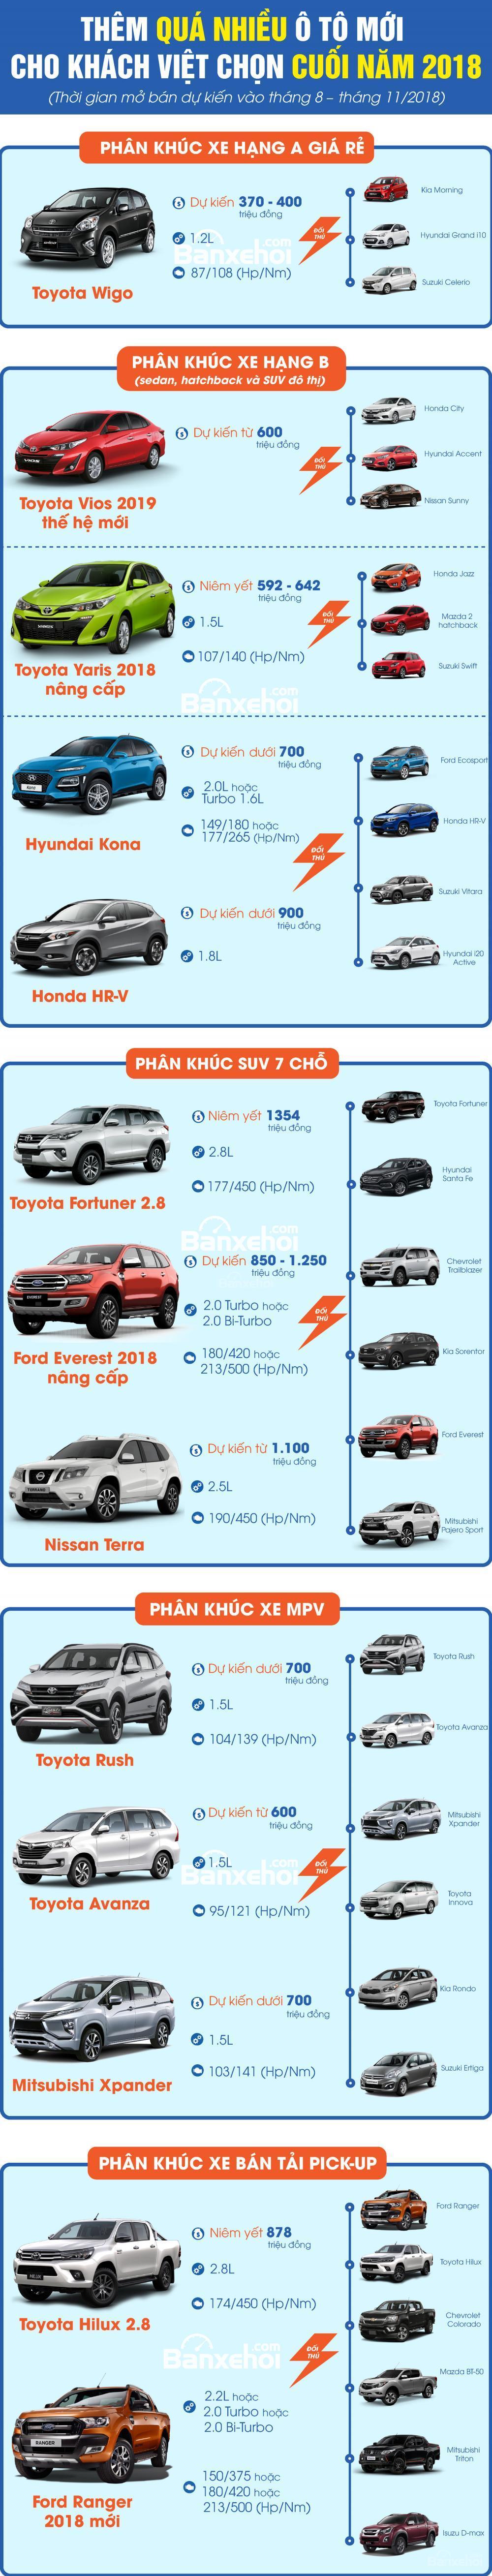 Từ 400 đến hơn tỷ, quá nhiều ô tô mới cho khách Việt chọn nửa cuối năm 2018..